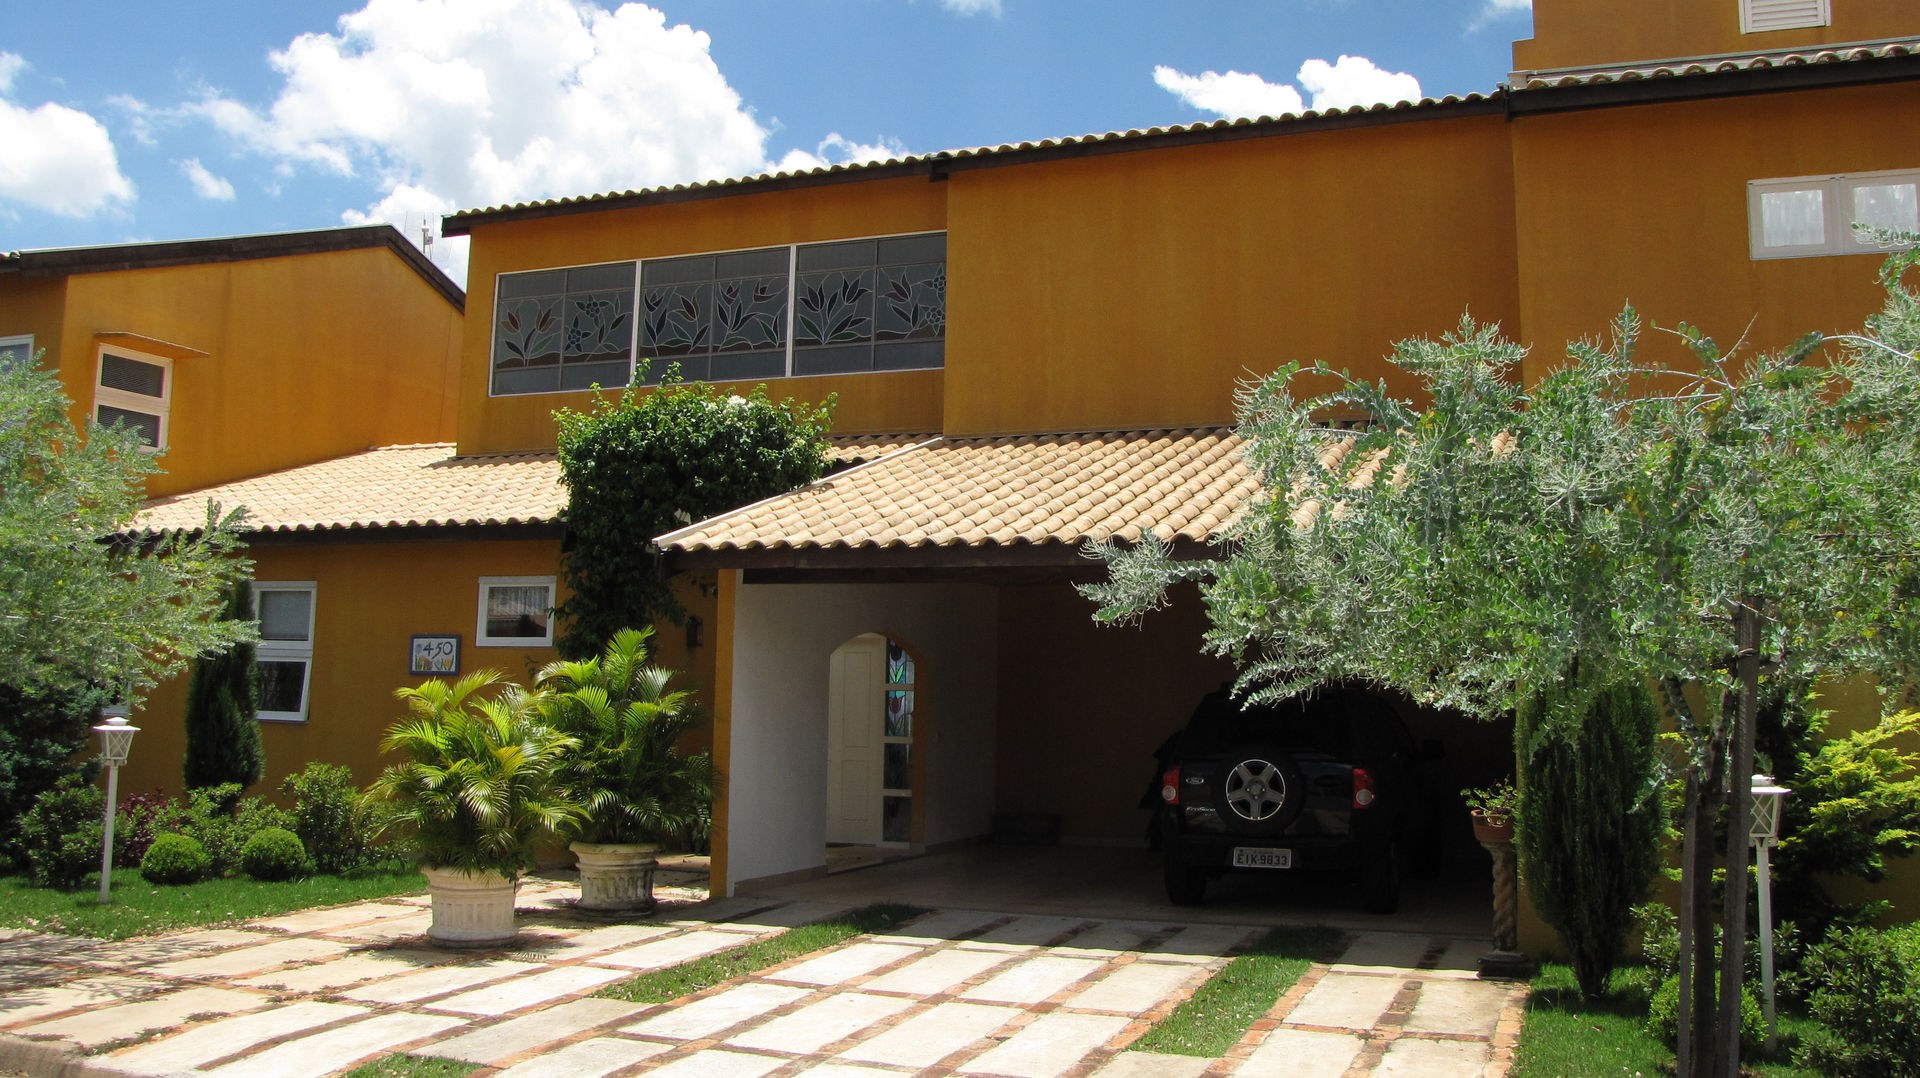 Residência em São Carlos, JMN arquitetura JMN arquitetura Condominios